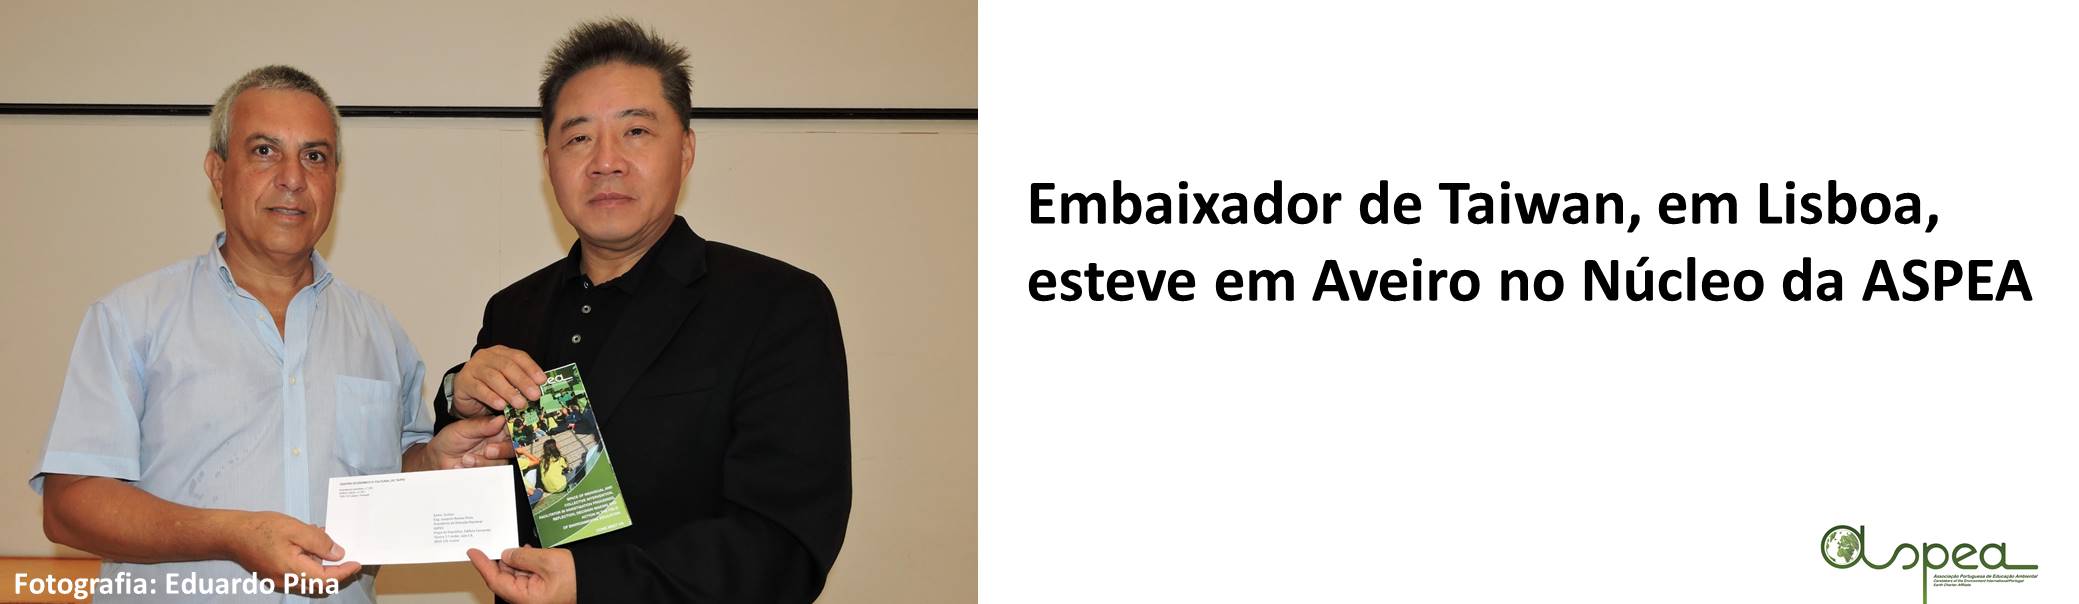 banner embaixador